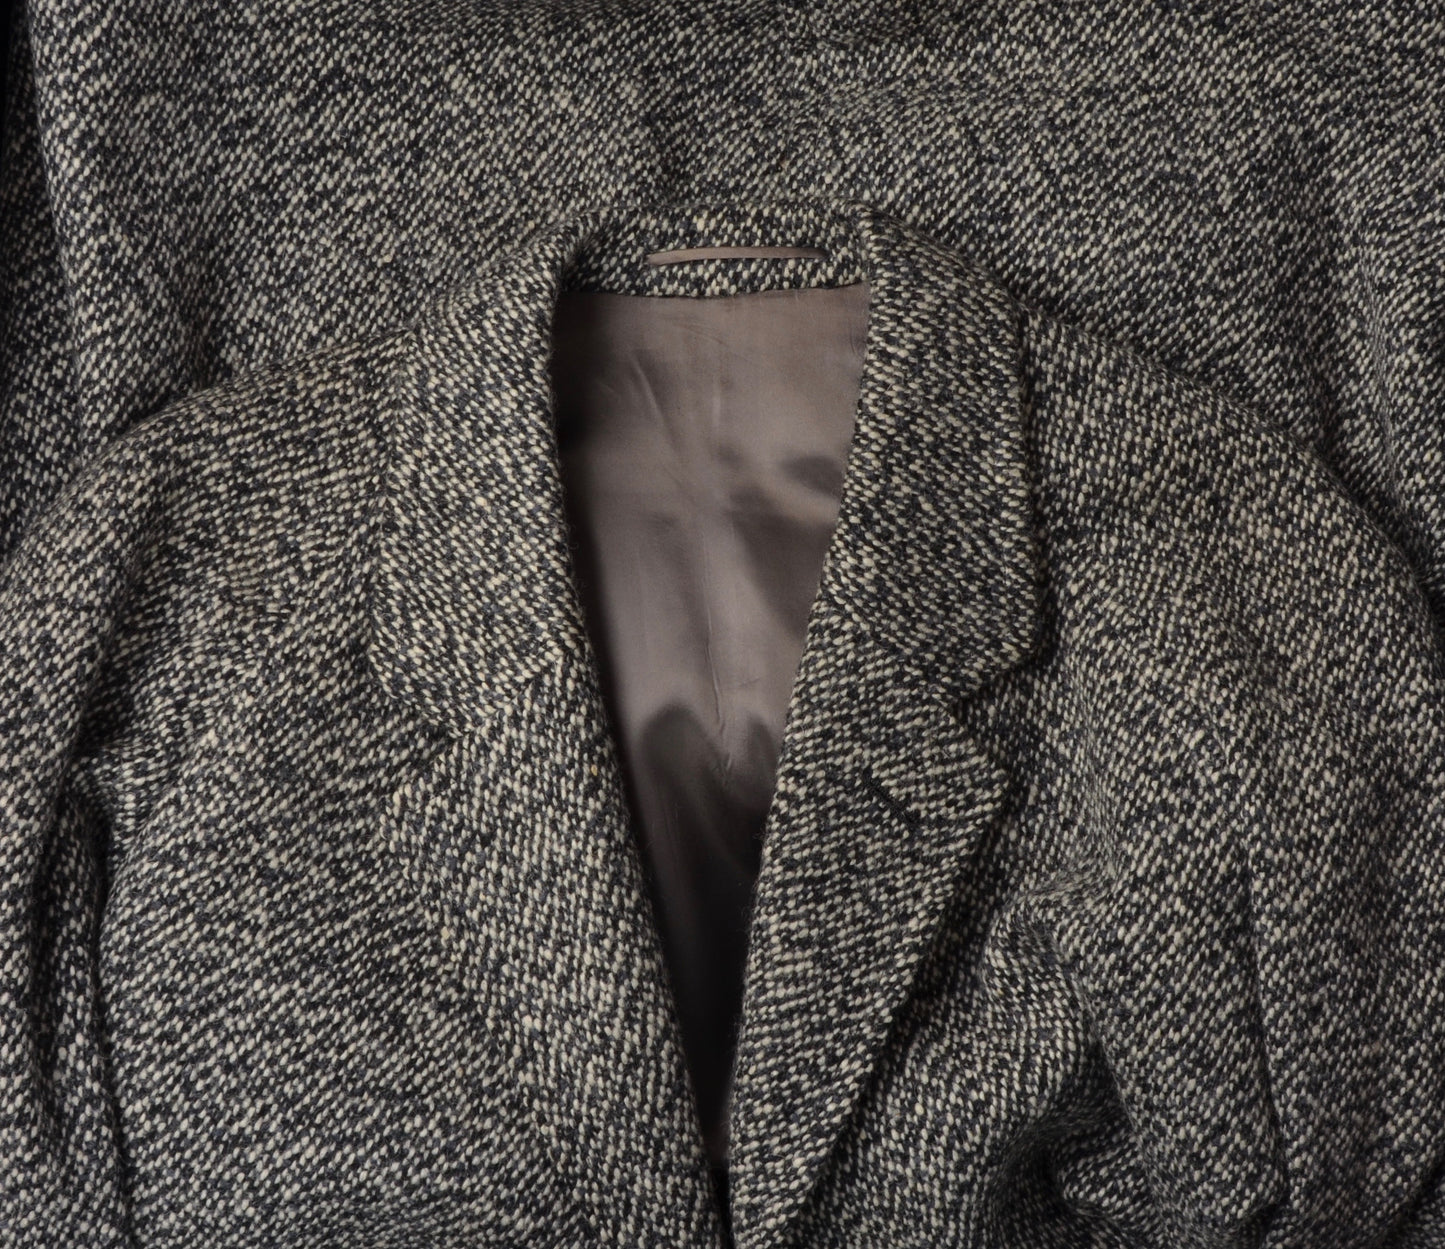 Handmade Tweed Overcoat by Samek Wien - Black, White, Grey